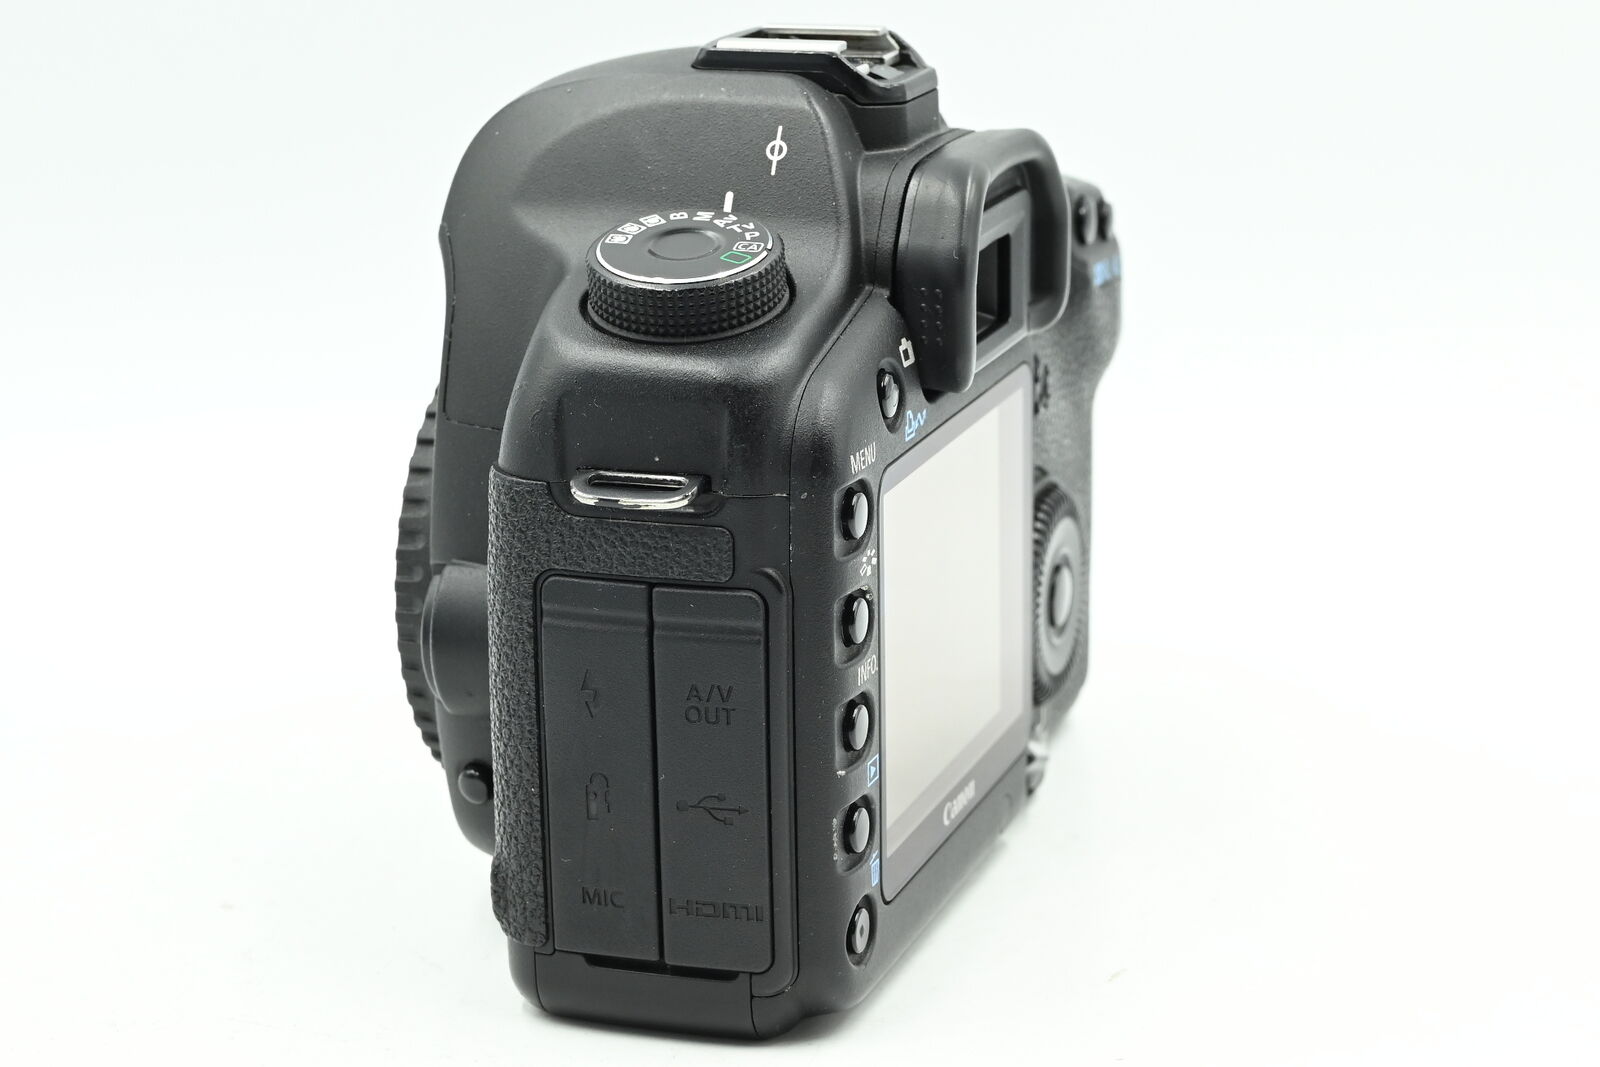 Canon EOS 5D Mark II 21.1MP Full Frame Digital SLR Camera Body #803